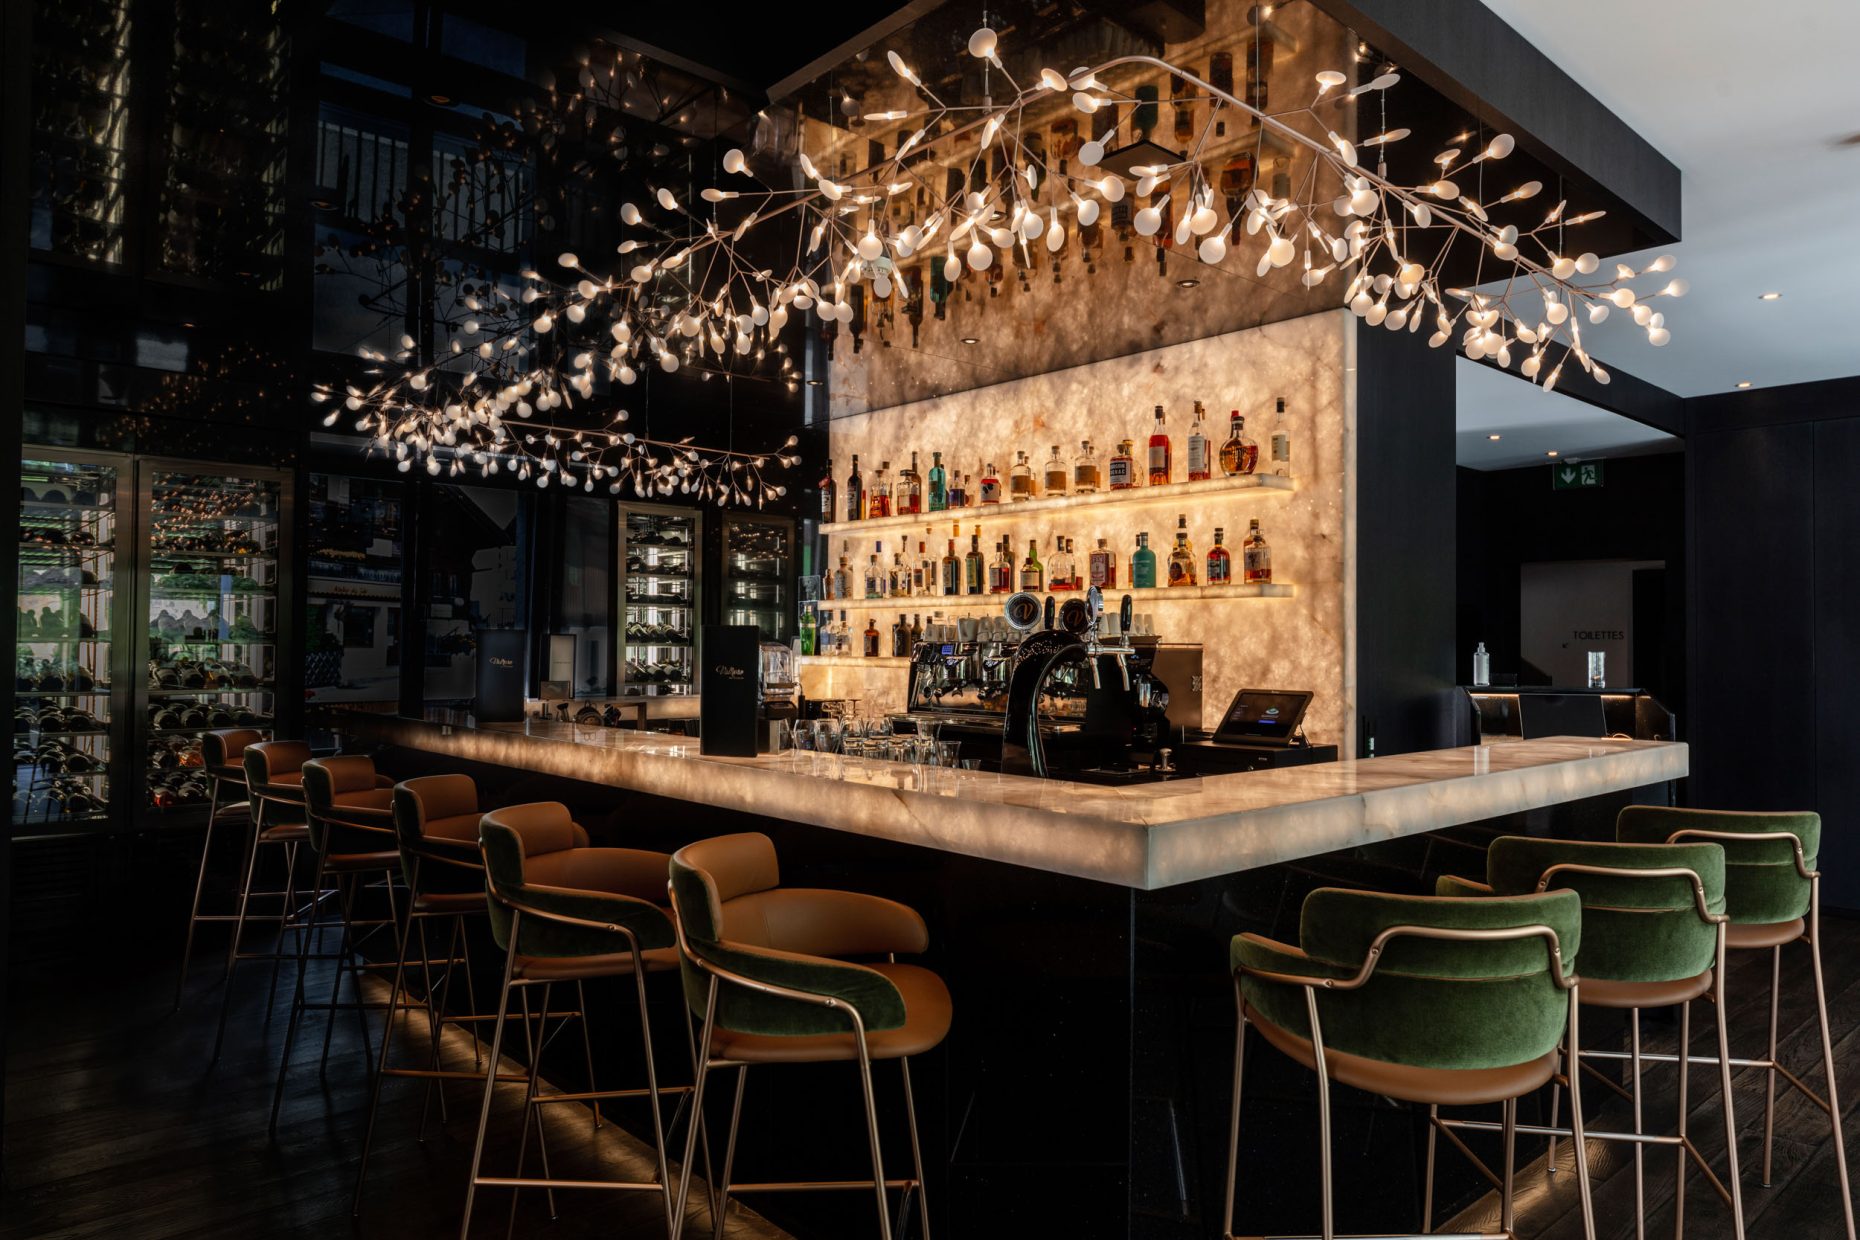 Accueil - Section 6 - Bar Lounge | Présentation - Image (simple)